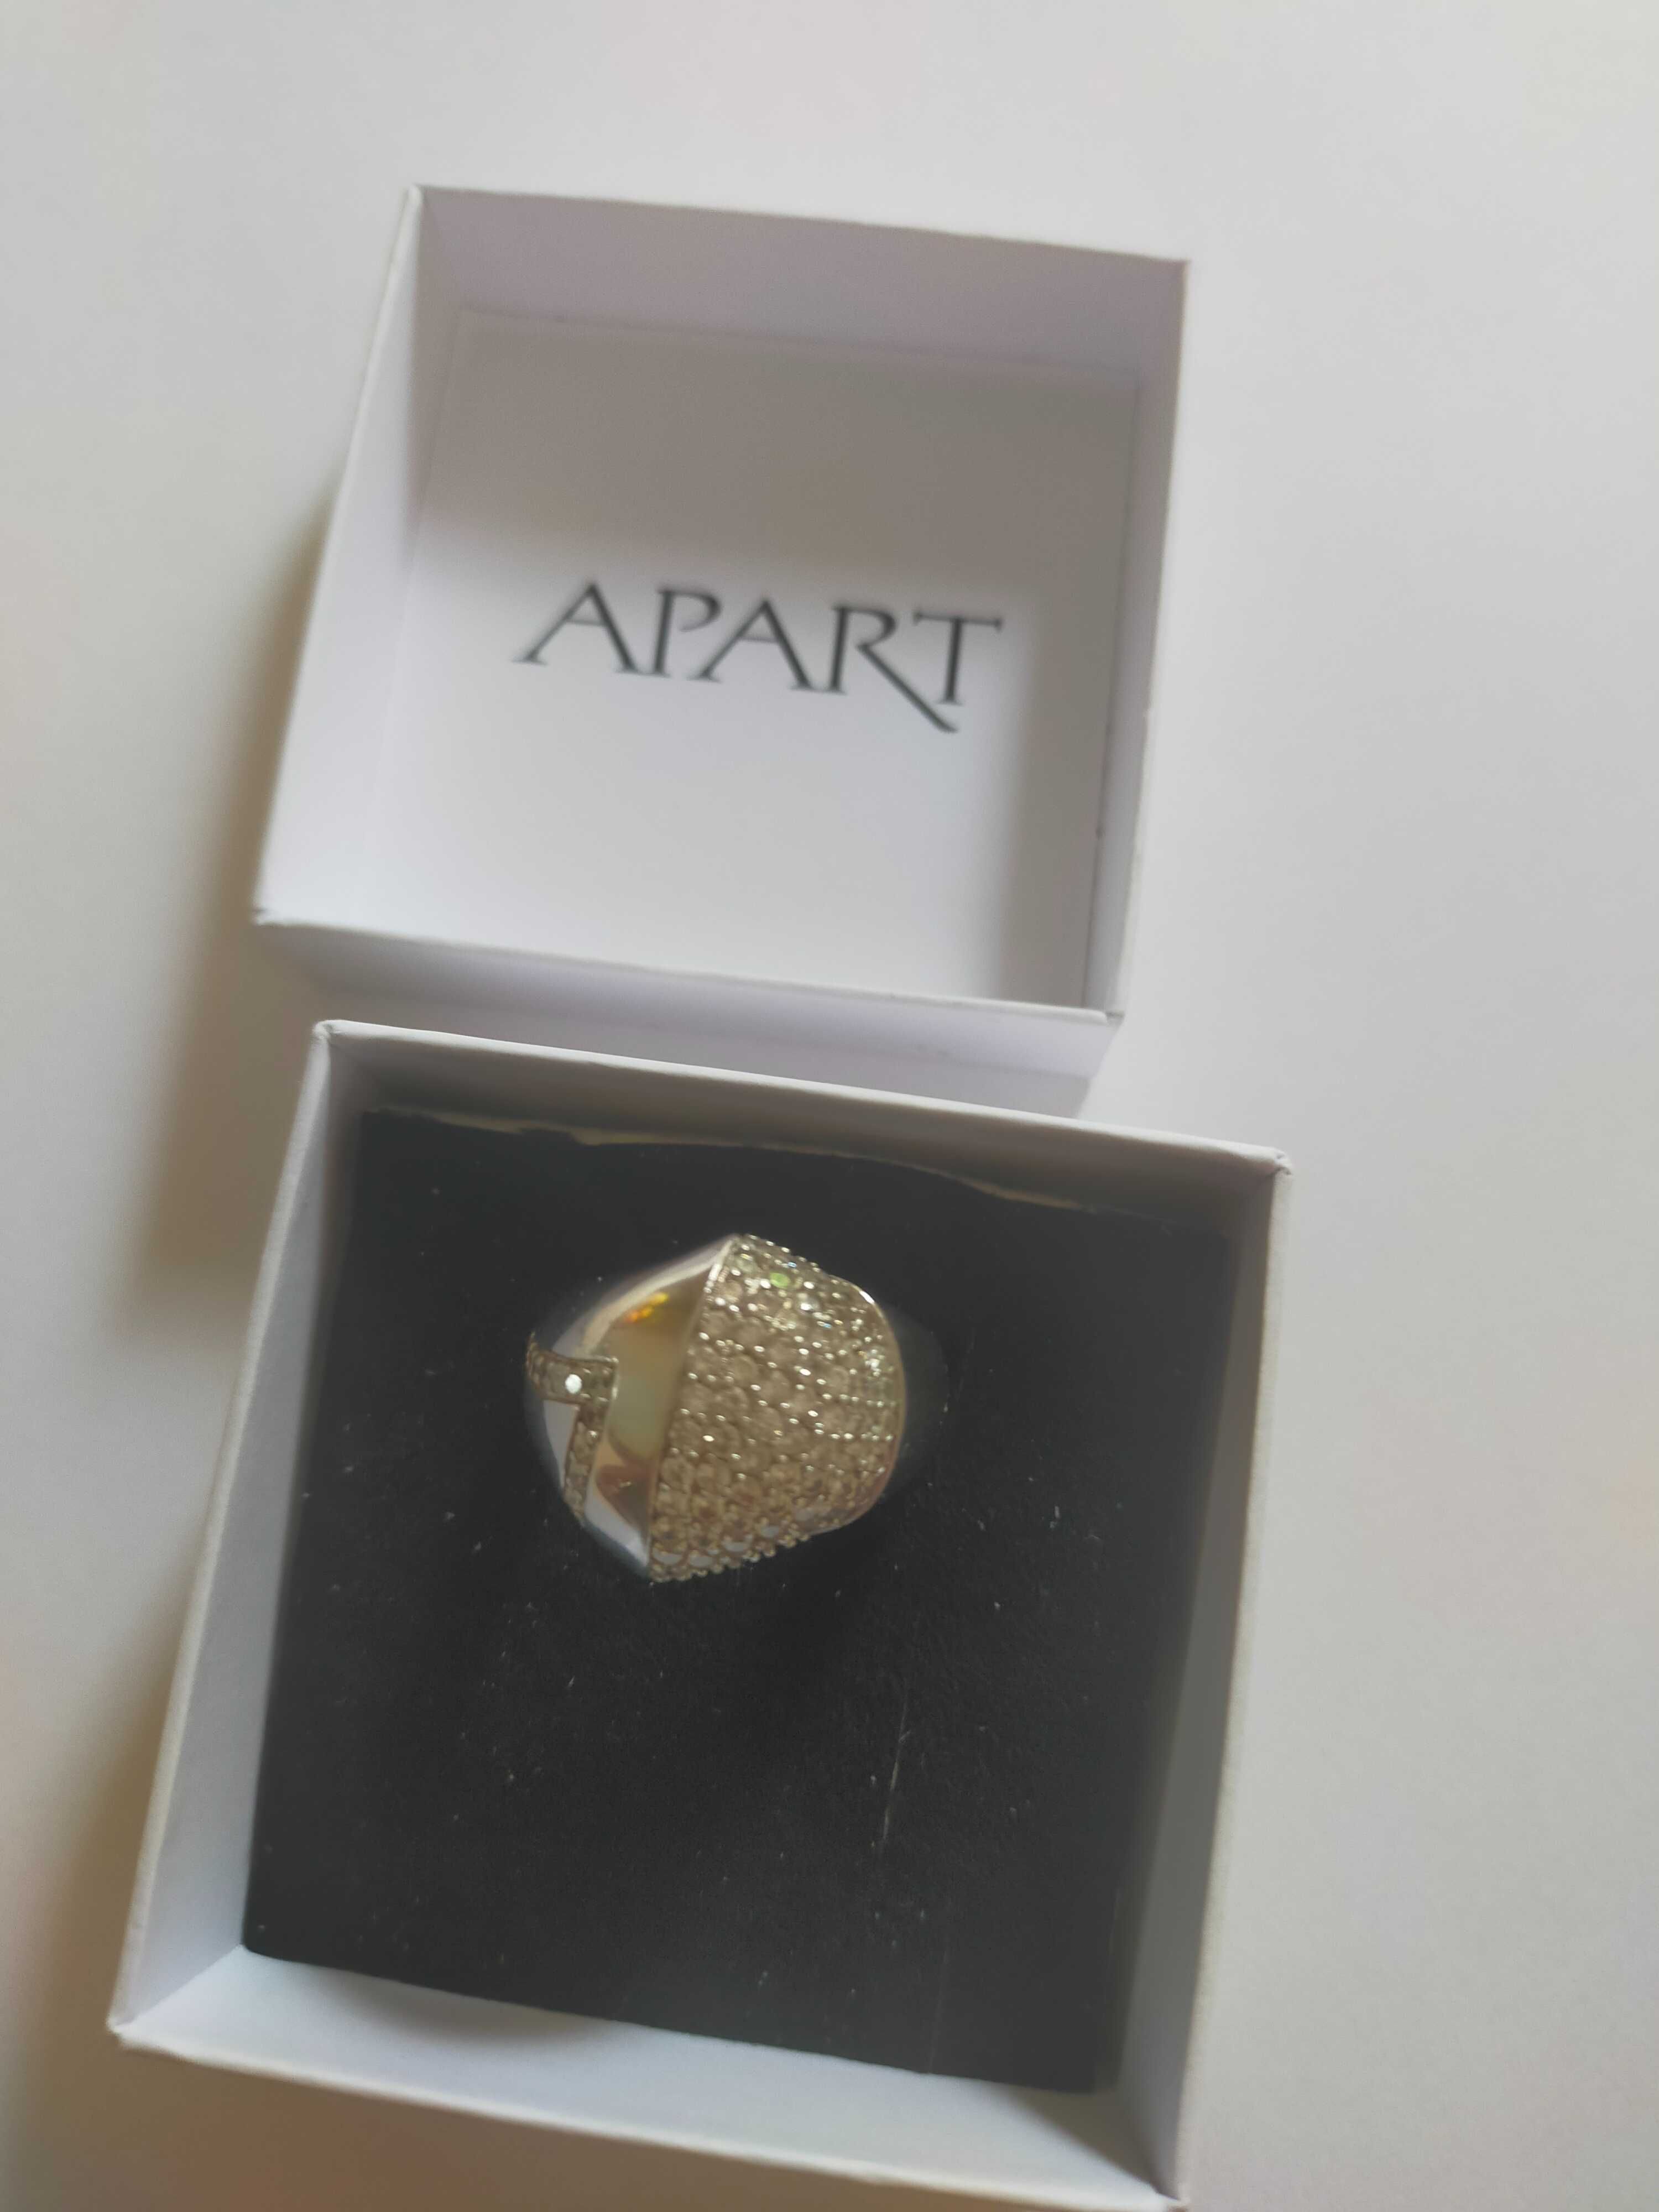 Srebrny pierścionek firmy APART